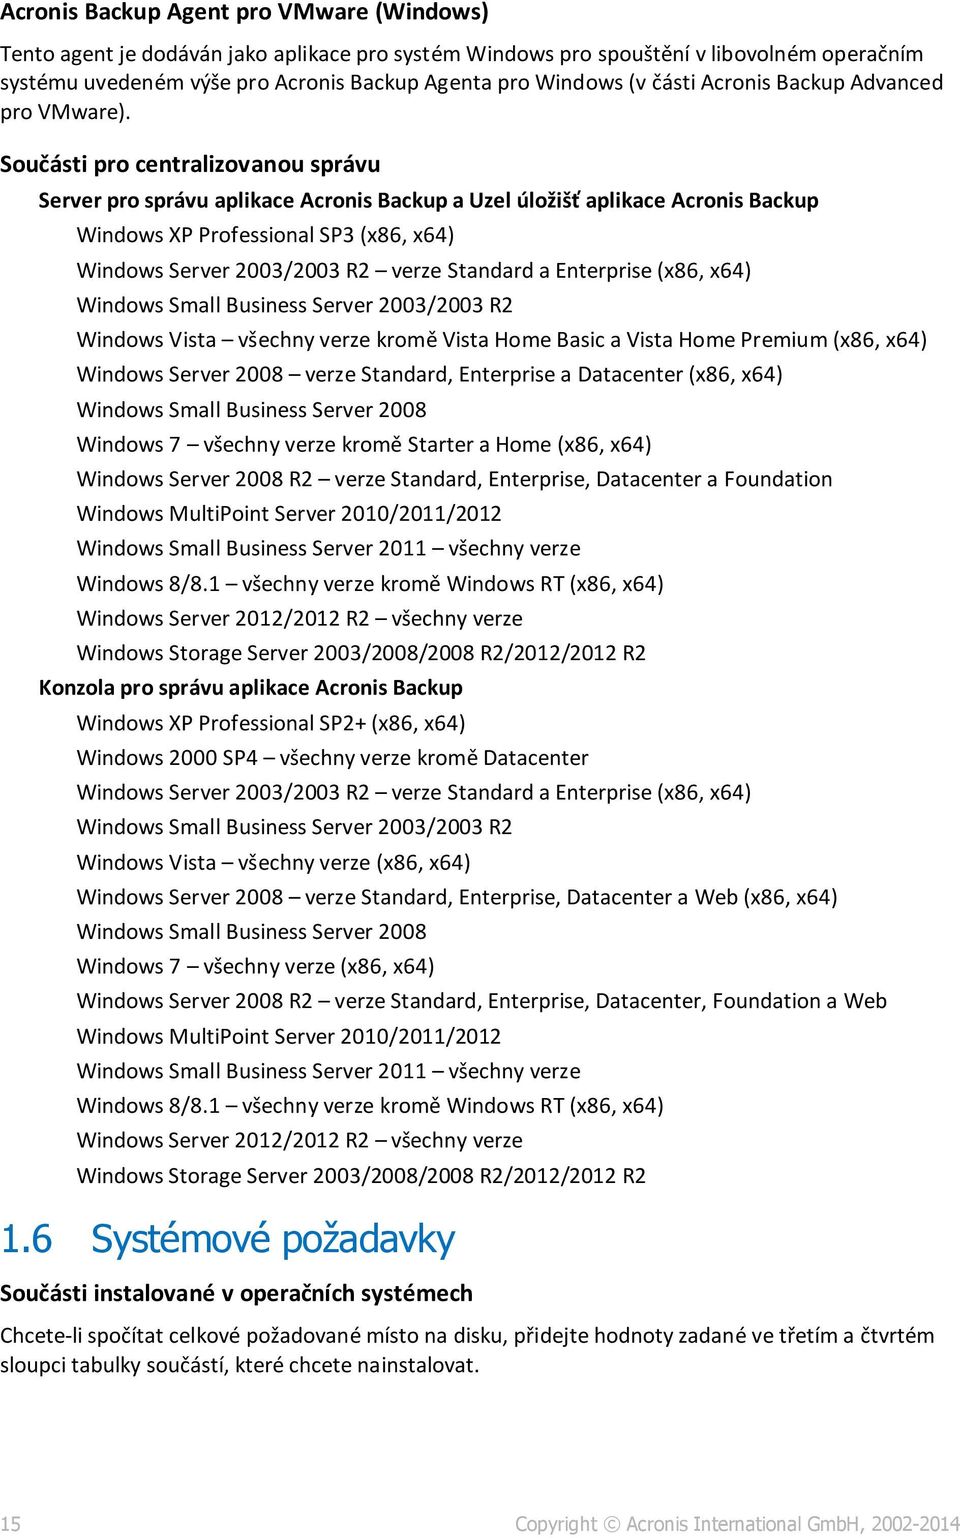 Součásti pro centralizovanou správu Server pro správu aplikace Acronis Backup a Uzel úložišť aplikace Acronis Backup Windows XP Professional SP3 (x86, x64) Windows Server 2003/2003 R2 verze Standard